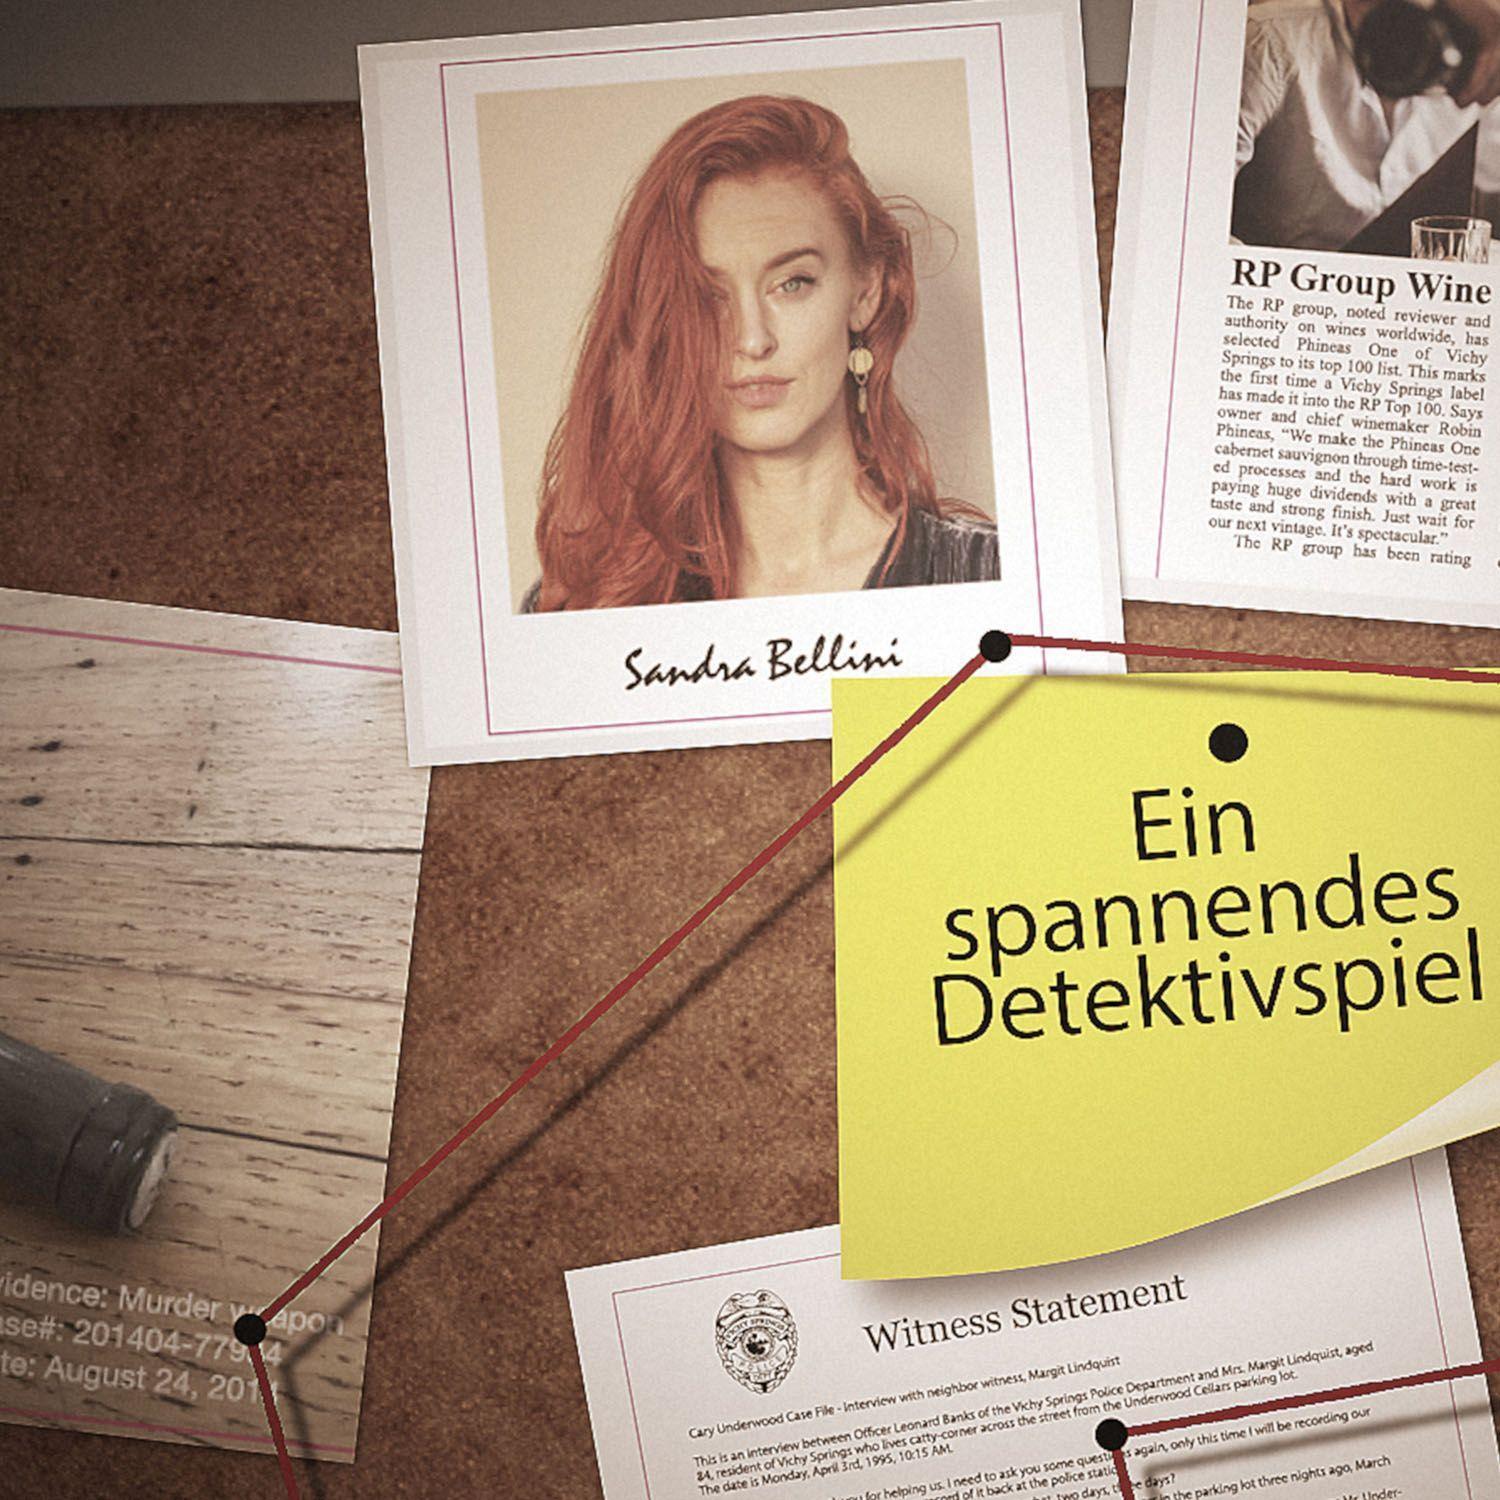 Bild: 4002051682163 | Murder Mystery Case File - Der Tote im Weinkeller | Spiel | Deutsch